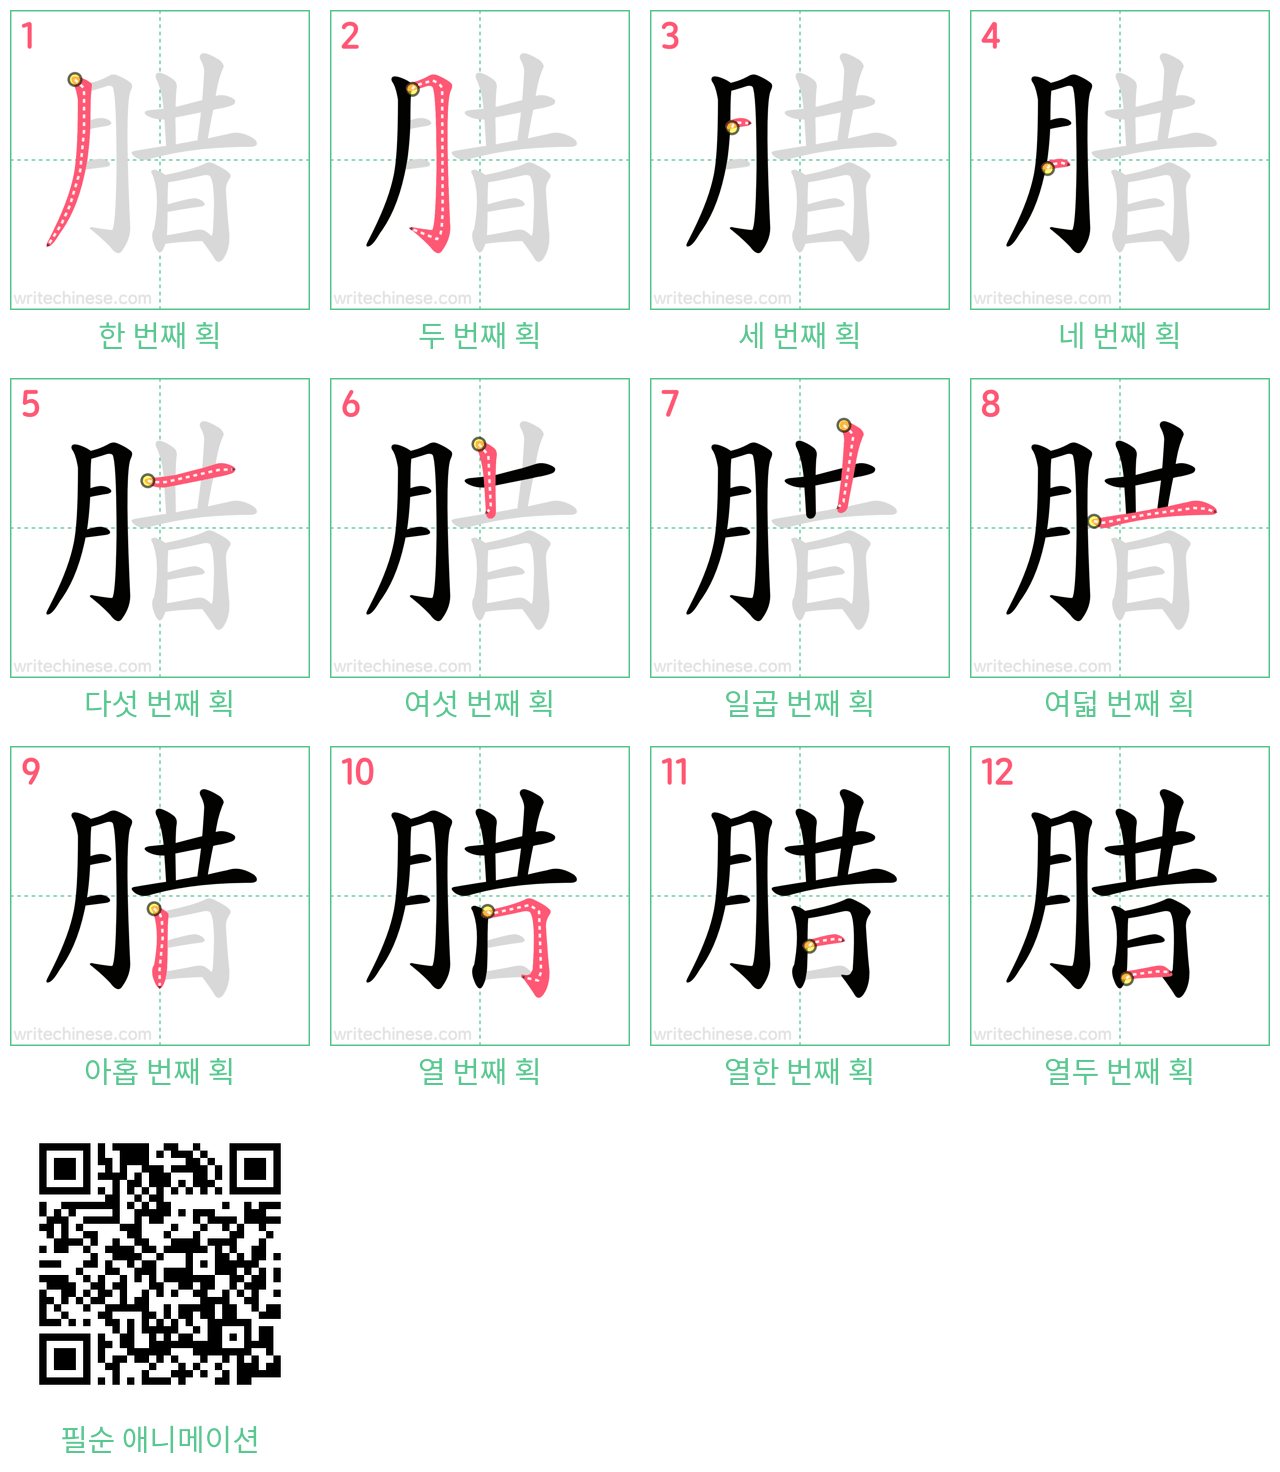 腊 step-by-step stroke order diagrams